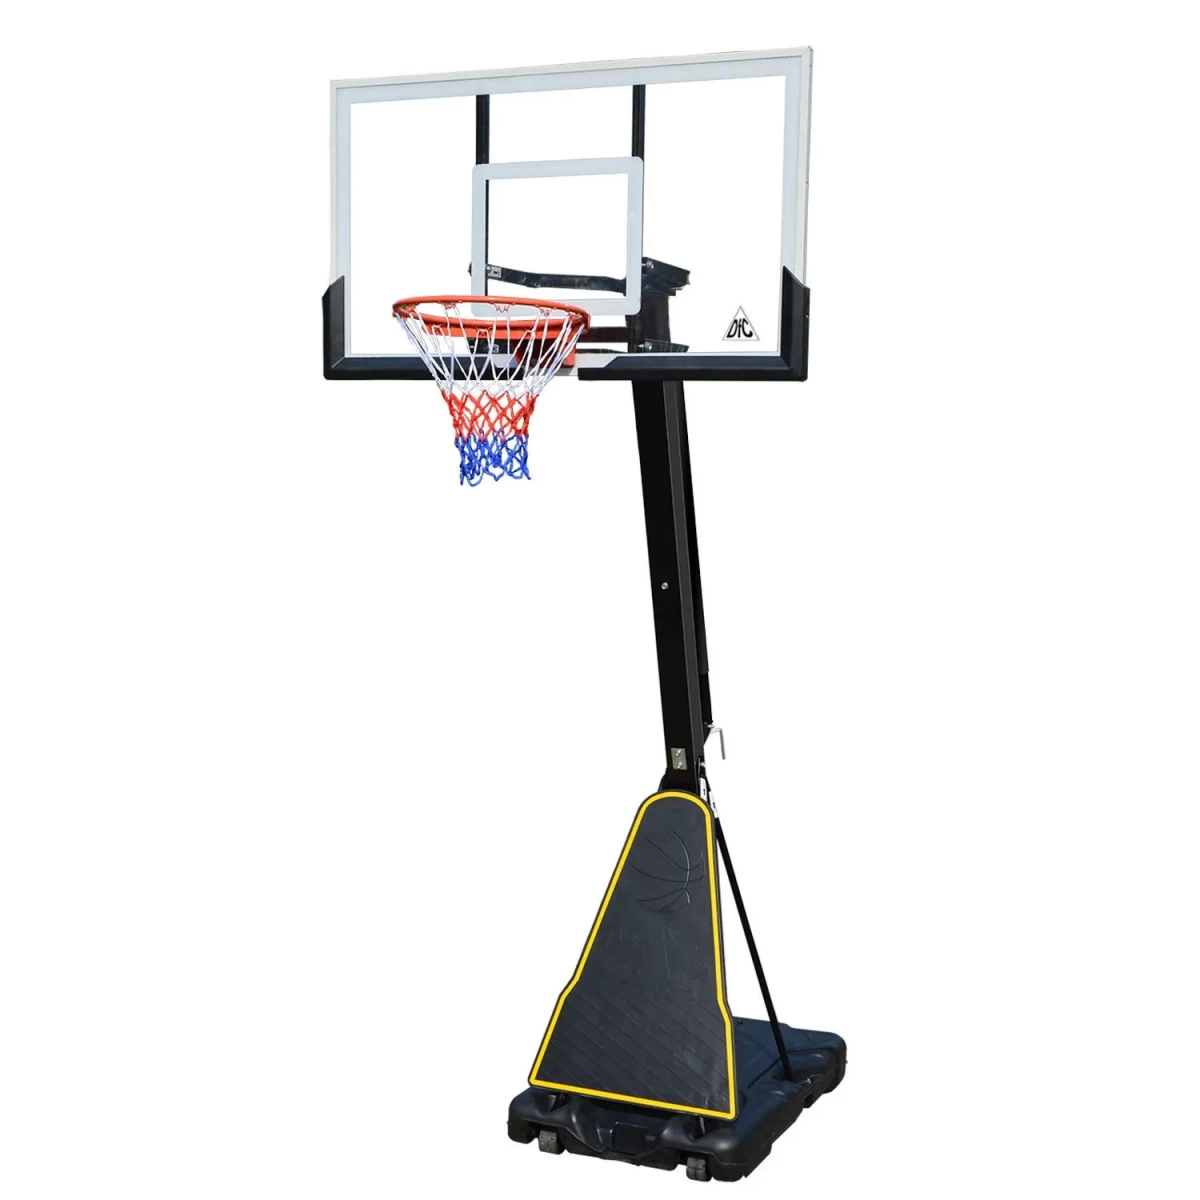 Баскетбольная мобильная стойка DFC STAND60A